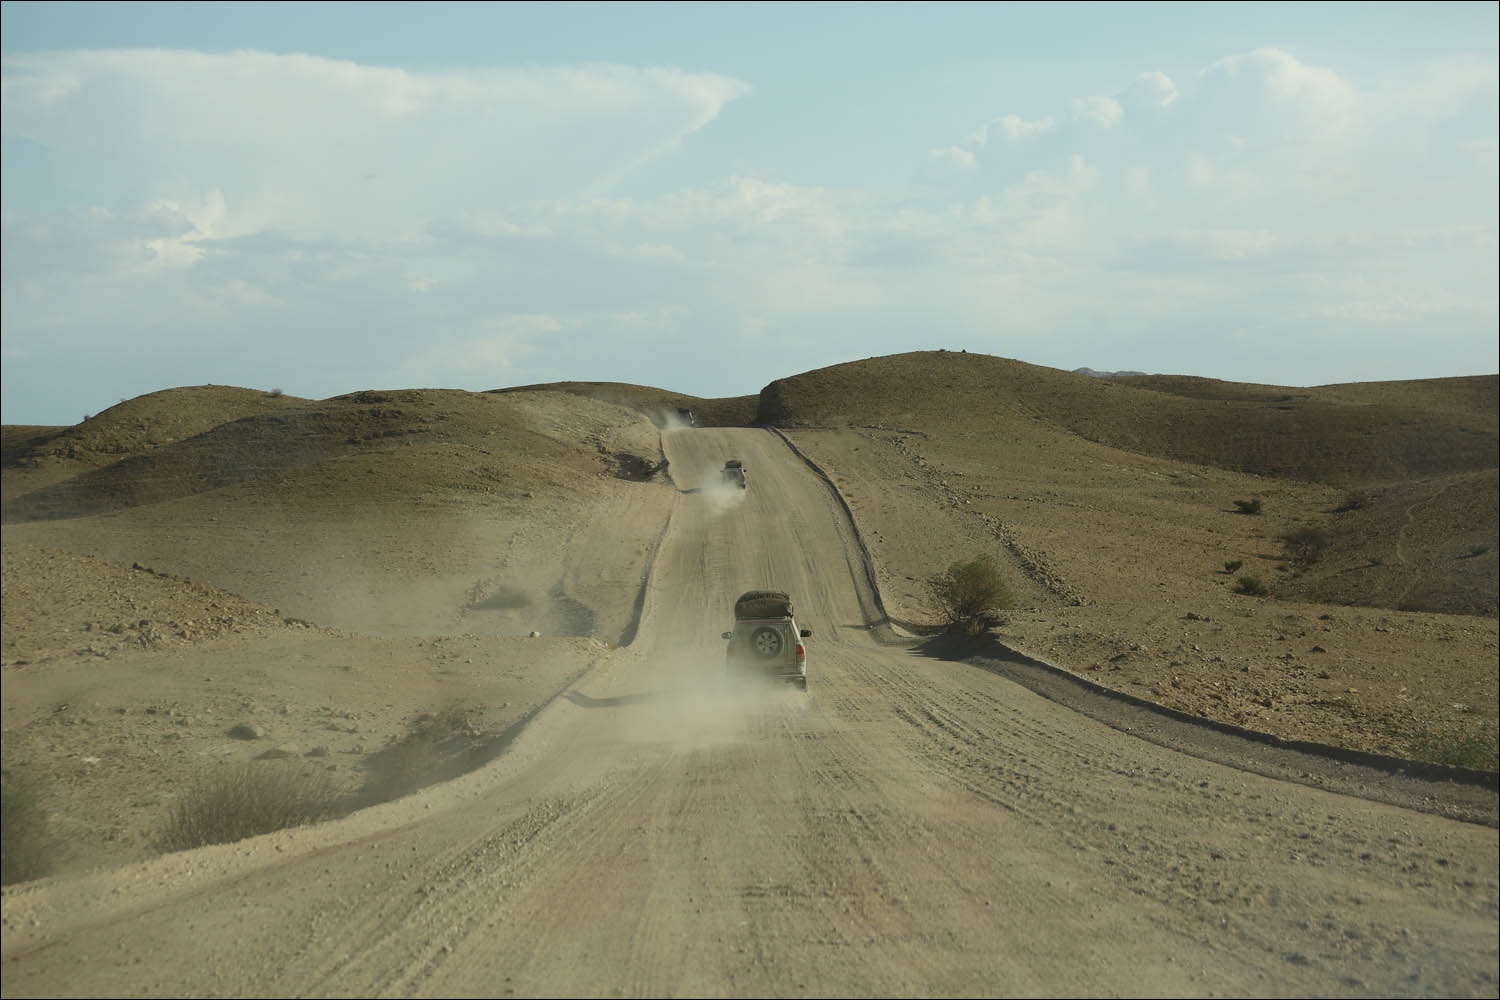 Намибия: инфраструктура и что лучше знать до поездки - 47